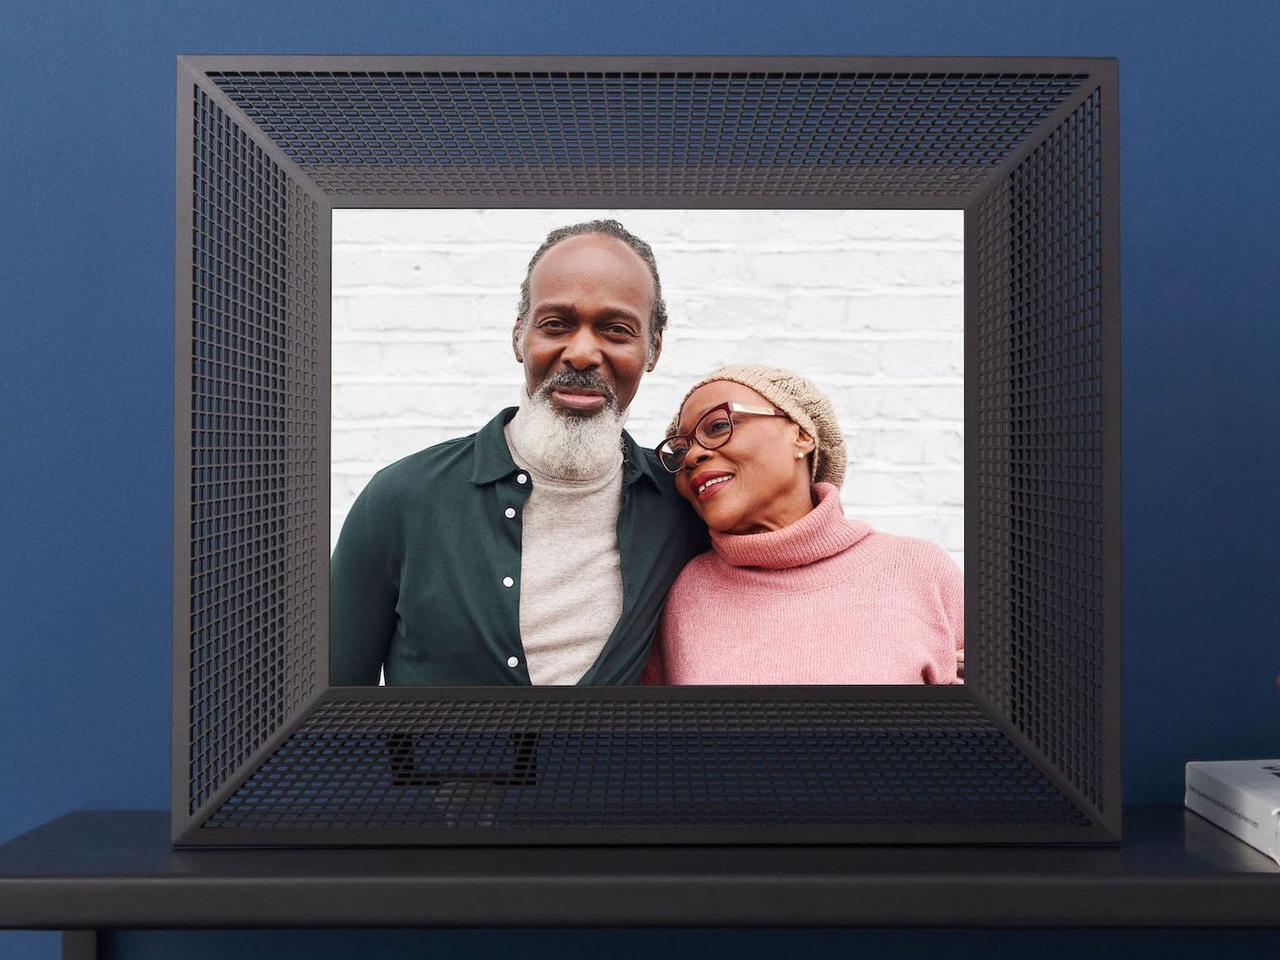 Цифровая фоторамка с черной сеткой, показывающая изображение пары